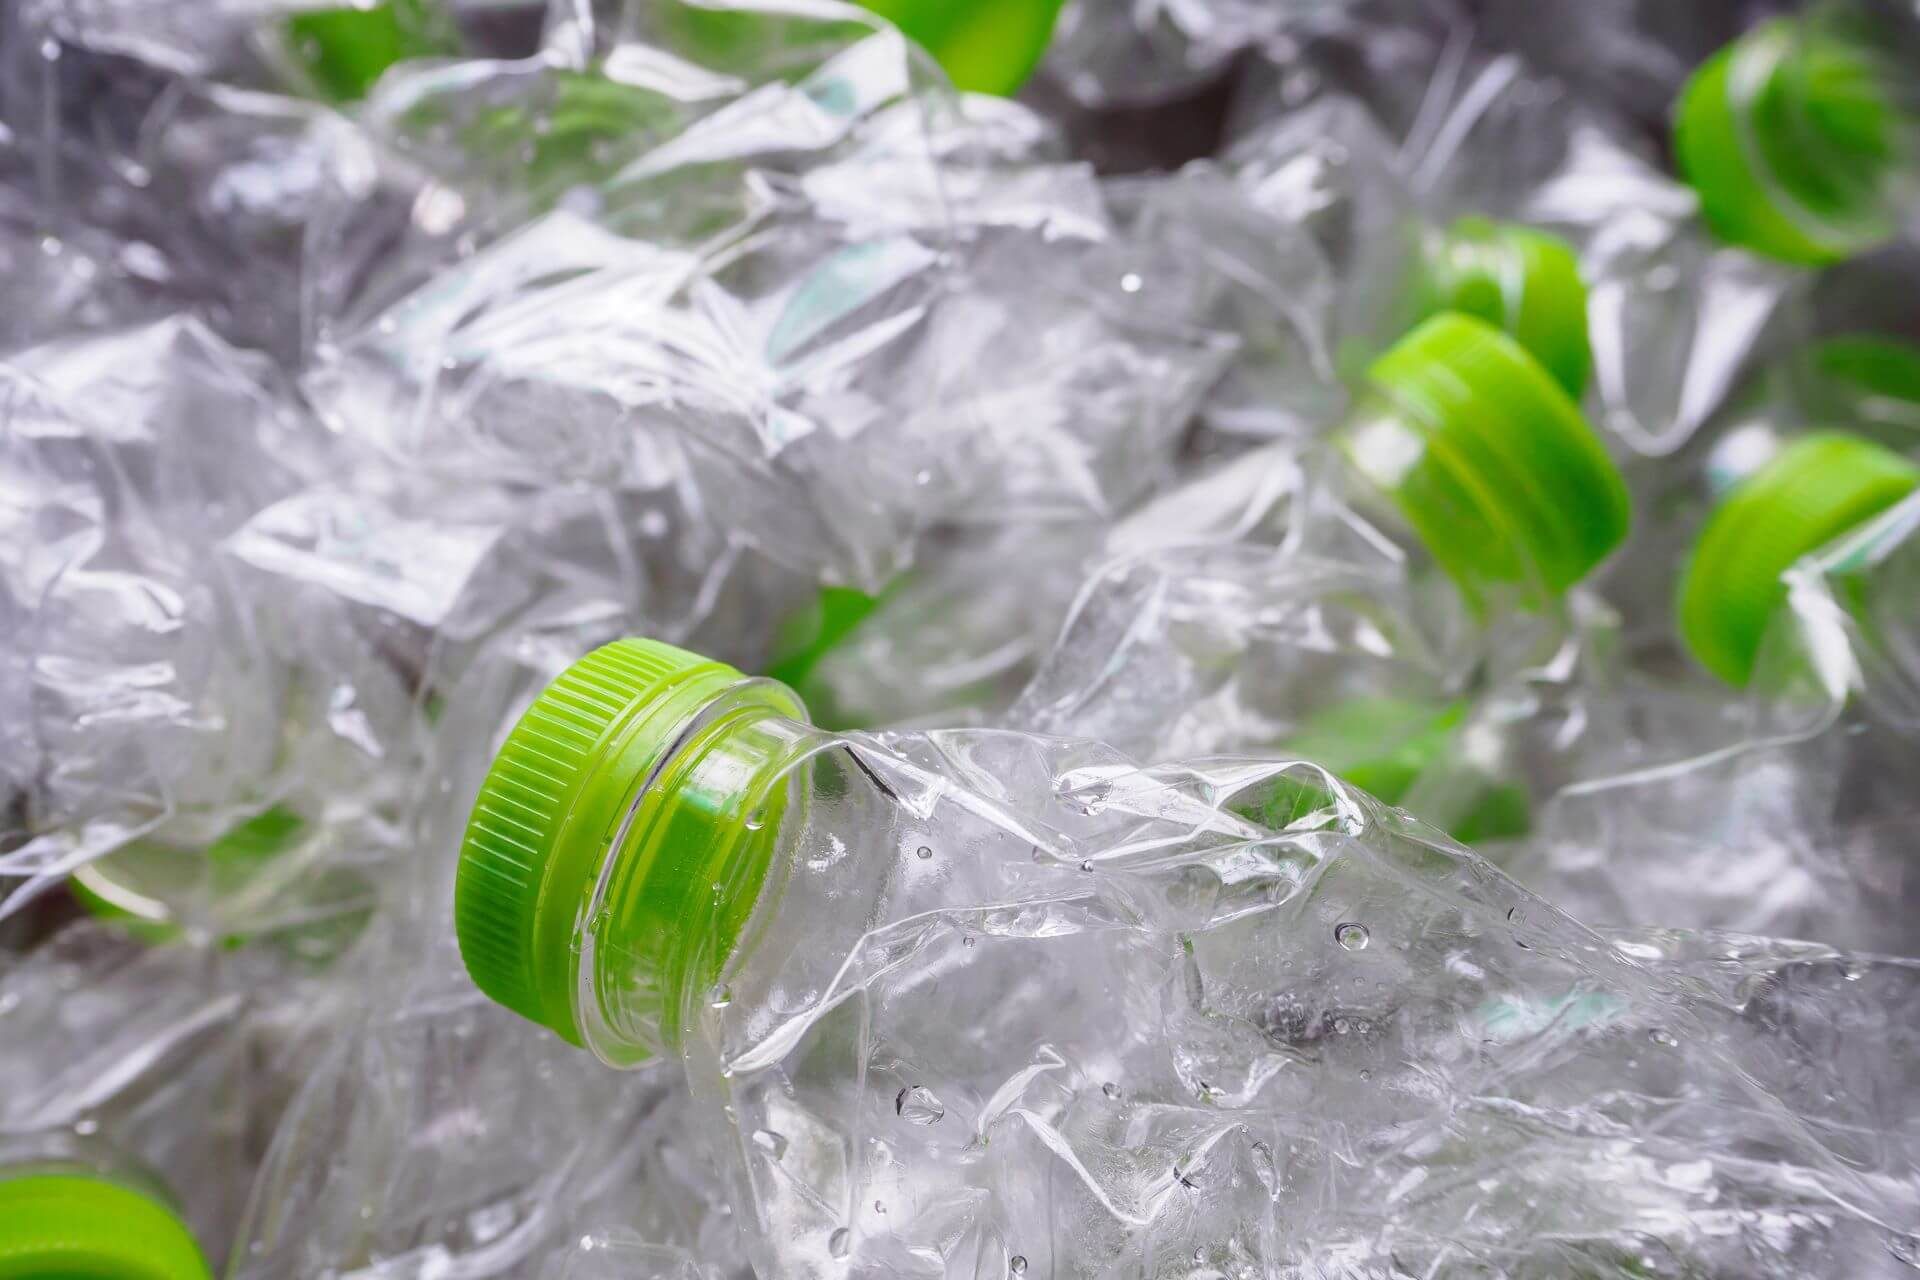 Zgniecione plastikowe butelki z zielonymi nakrętkami